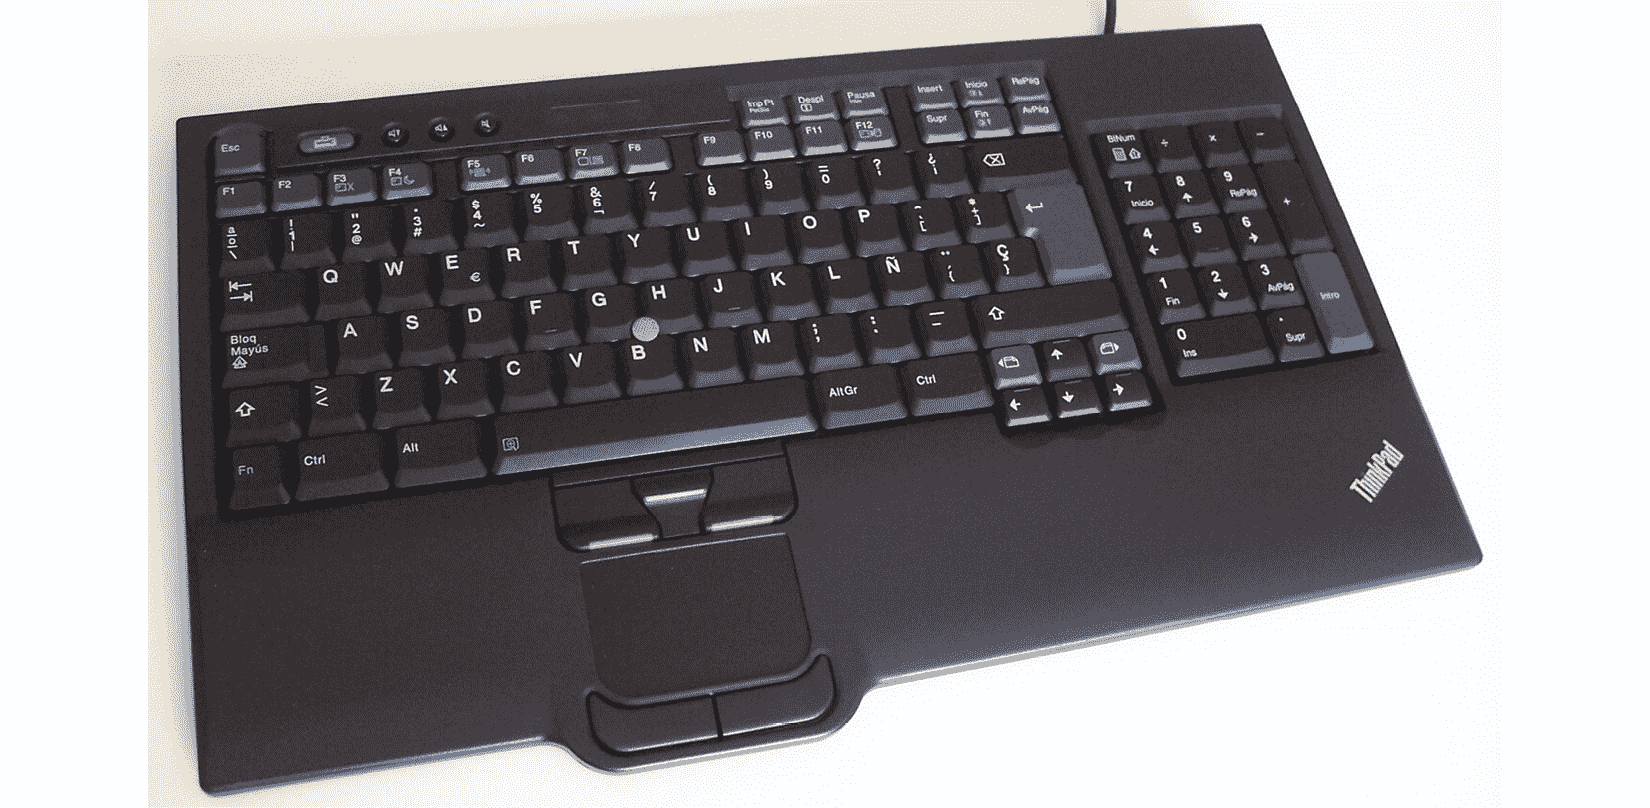 図 13: マウスパッドが統合されたキーボード